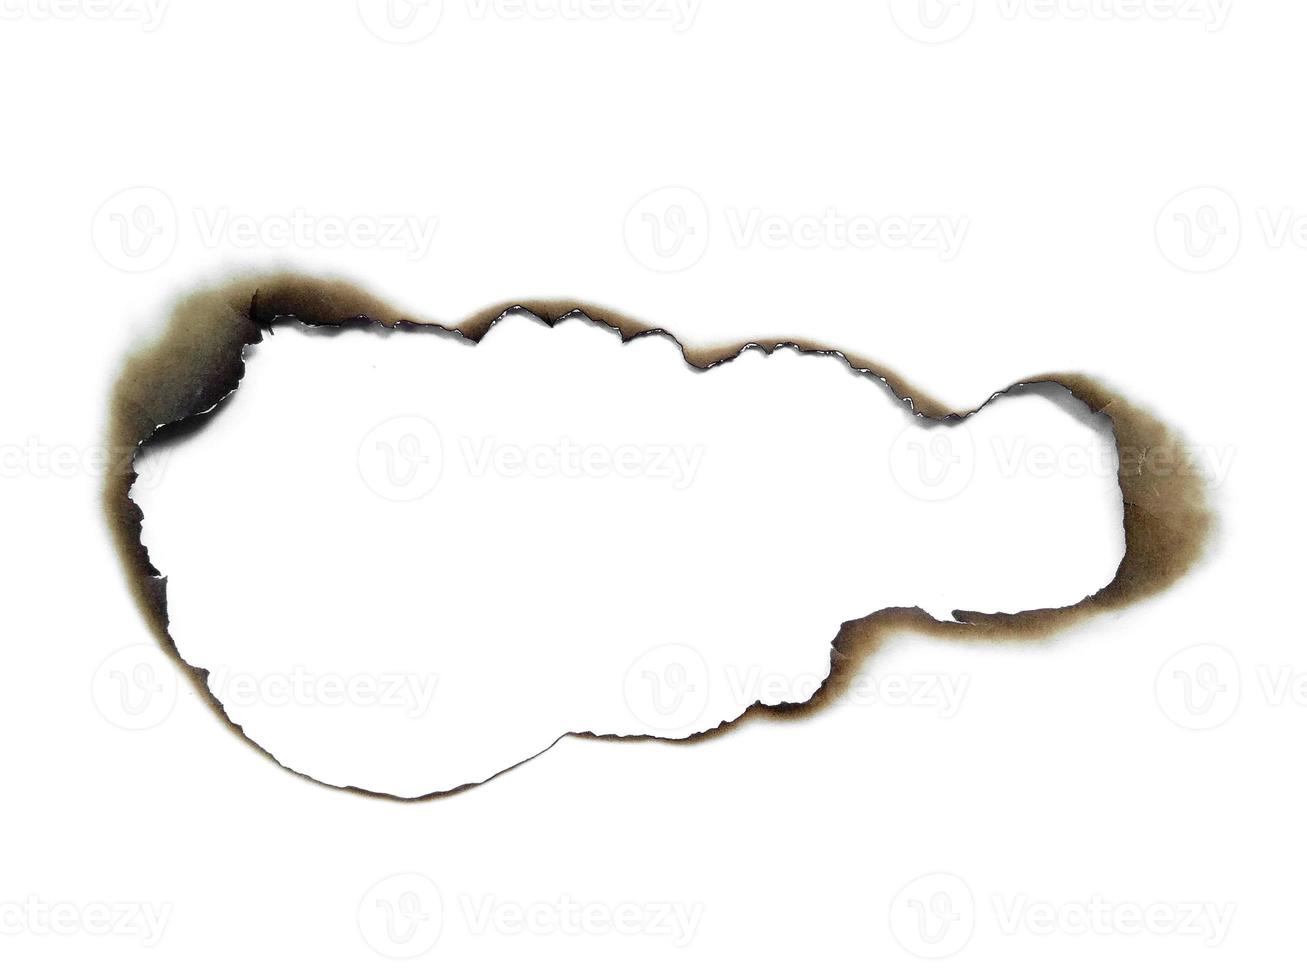 verbrande gaten in een stuk papier geïsoleerd op een witte achtergrond foto